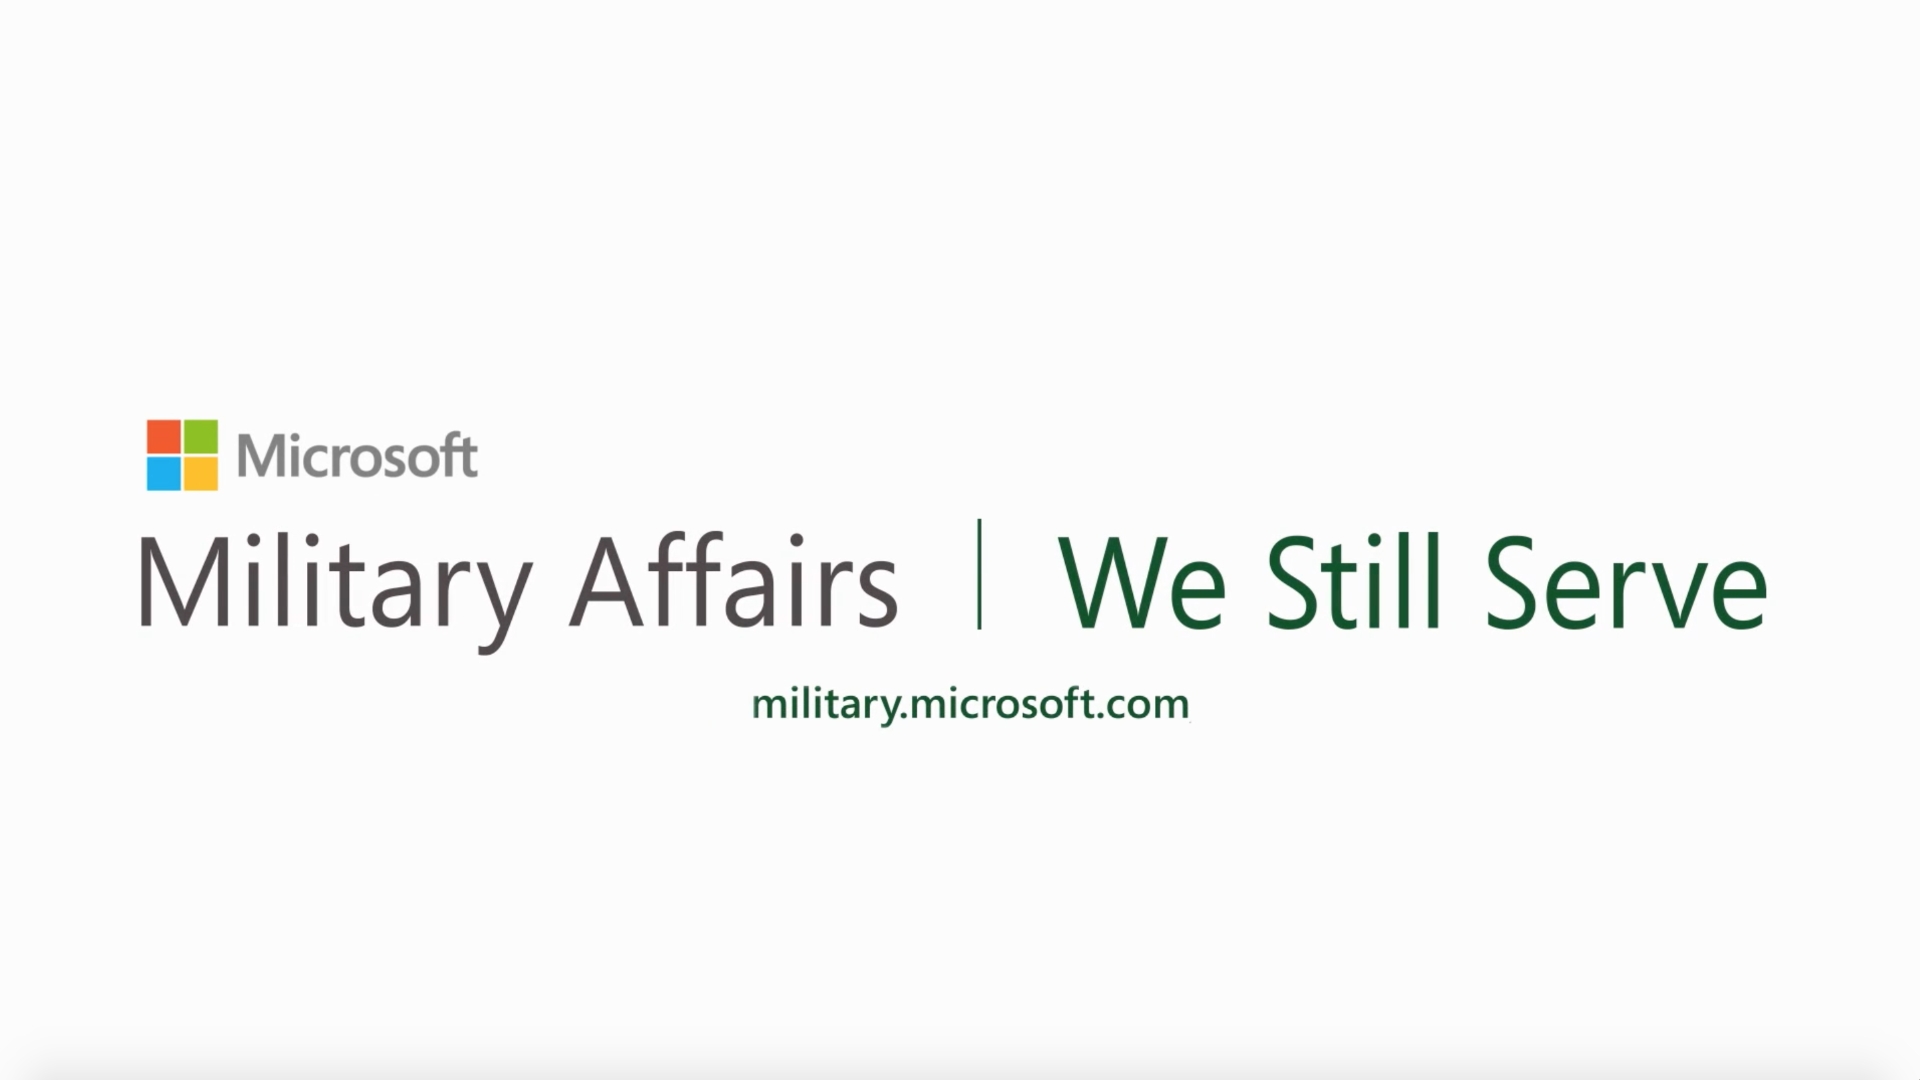 microsoft home use program army 2013